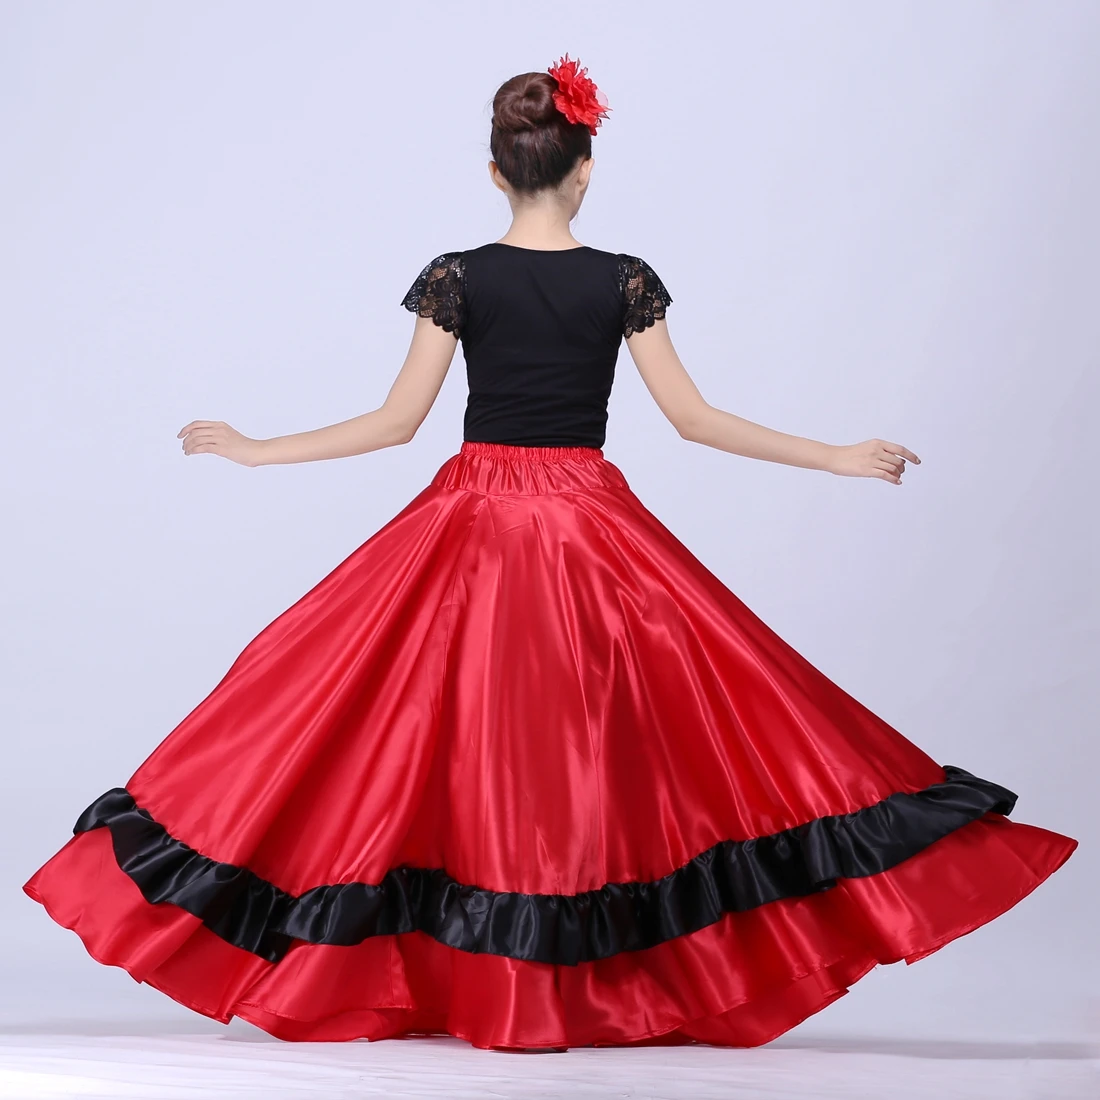 Испанская юбка для фламенко, юбка для танца живота, испанские танцевальные костюмы, бразильский танцевальный костюм, Цыганское Платье для фламенко, дропшиппинг